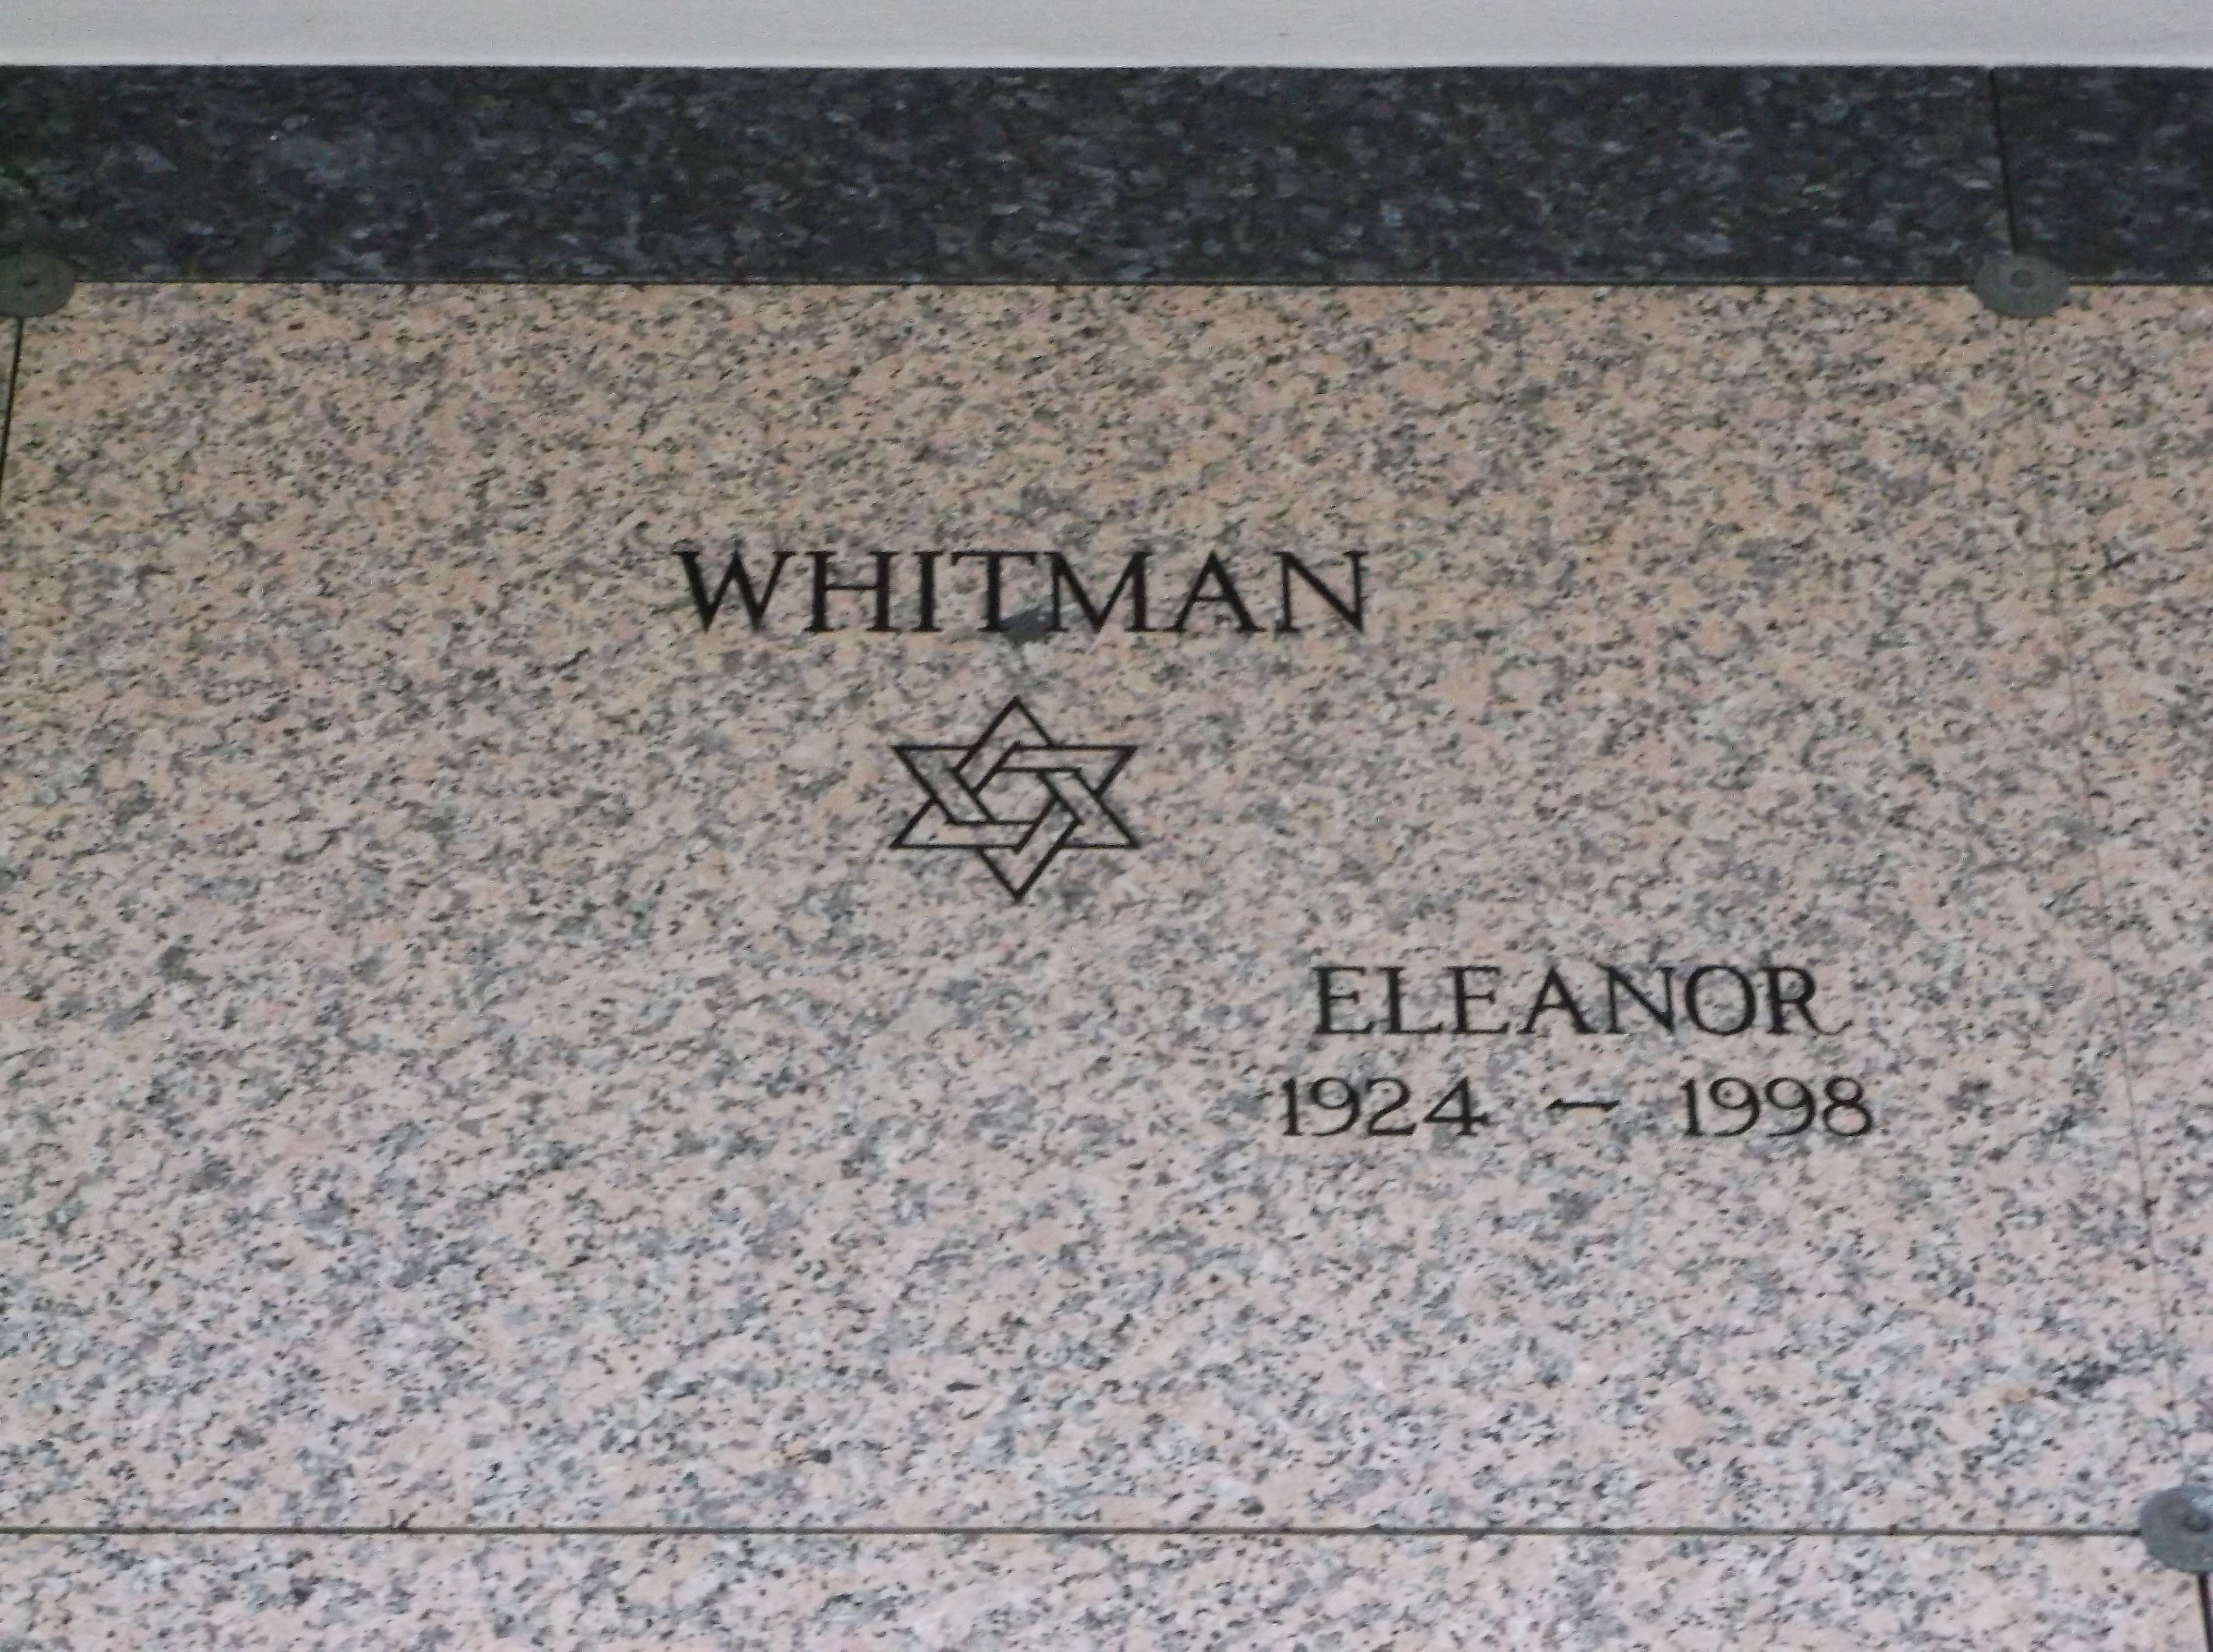 Eleanor Whitman